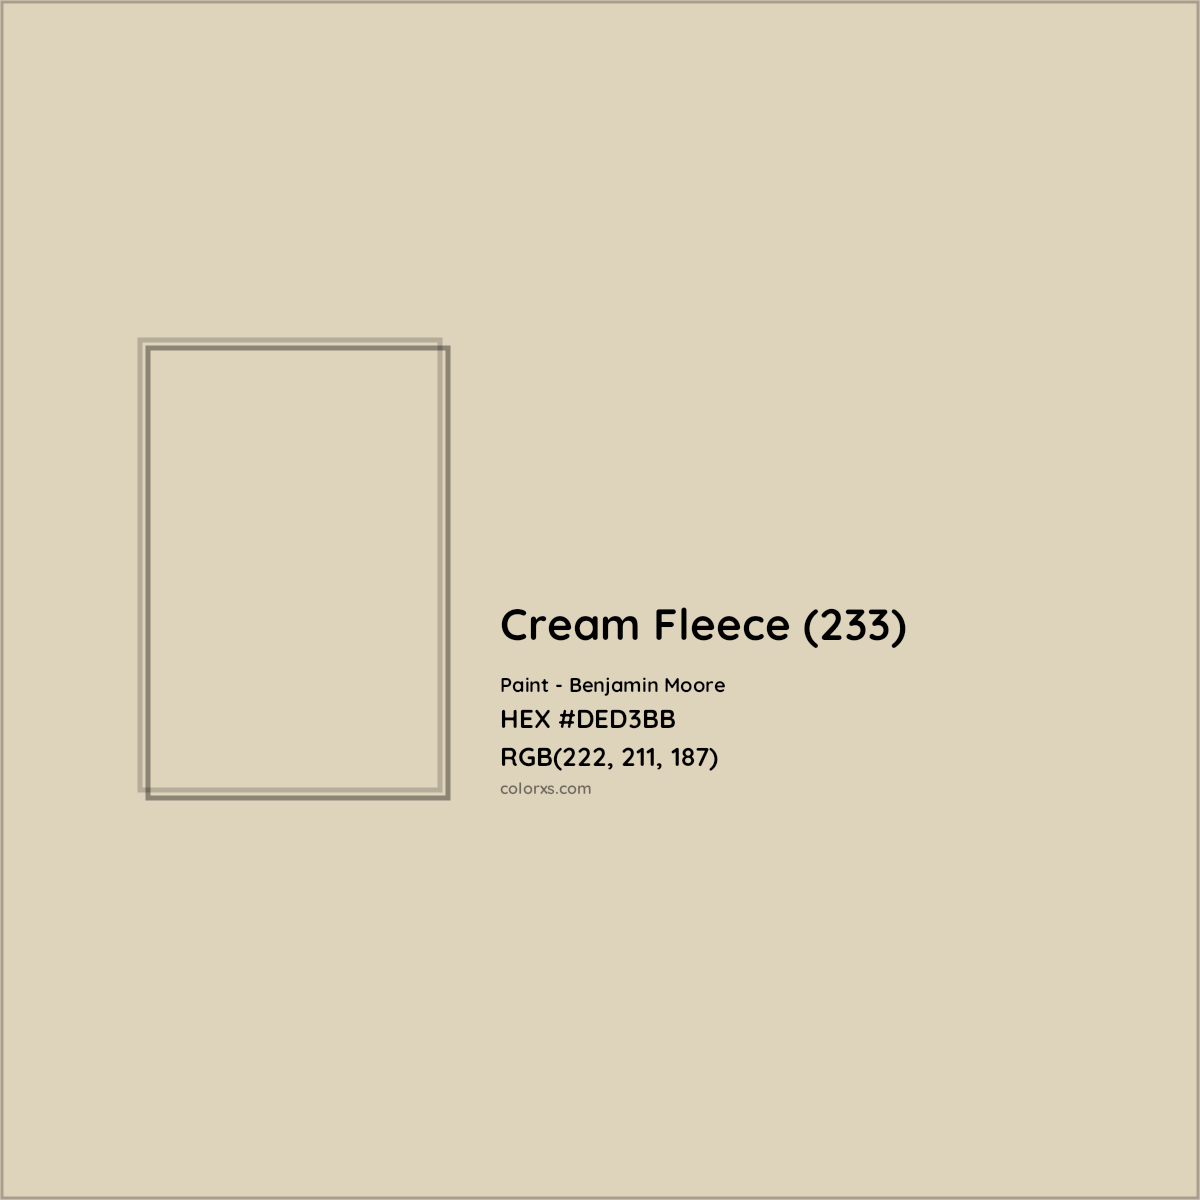 HEX #DED3BB Cream Fleece (233) Paint Benjamin Moore - Color Code